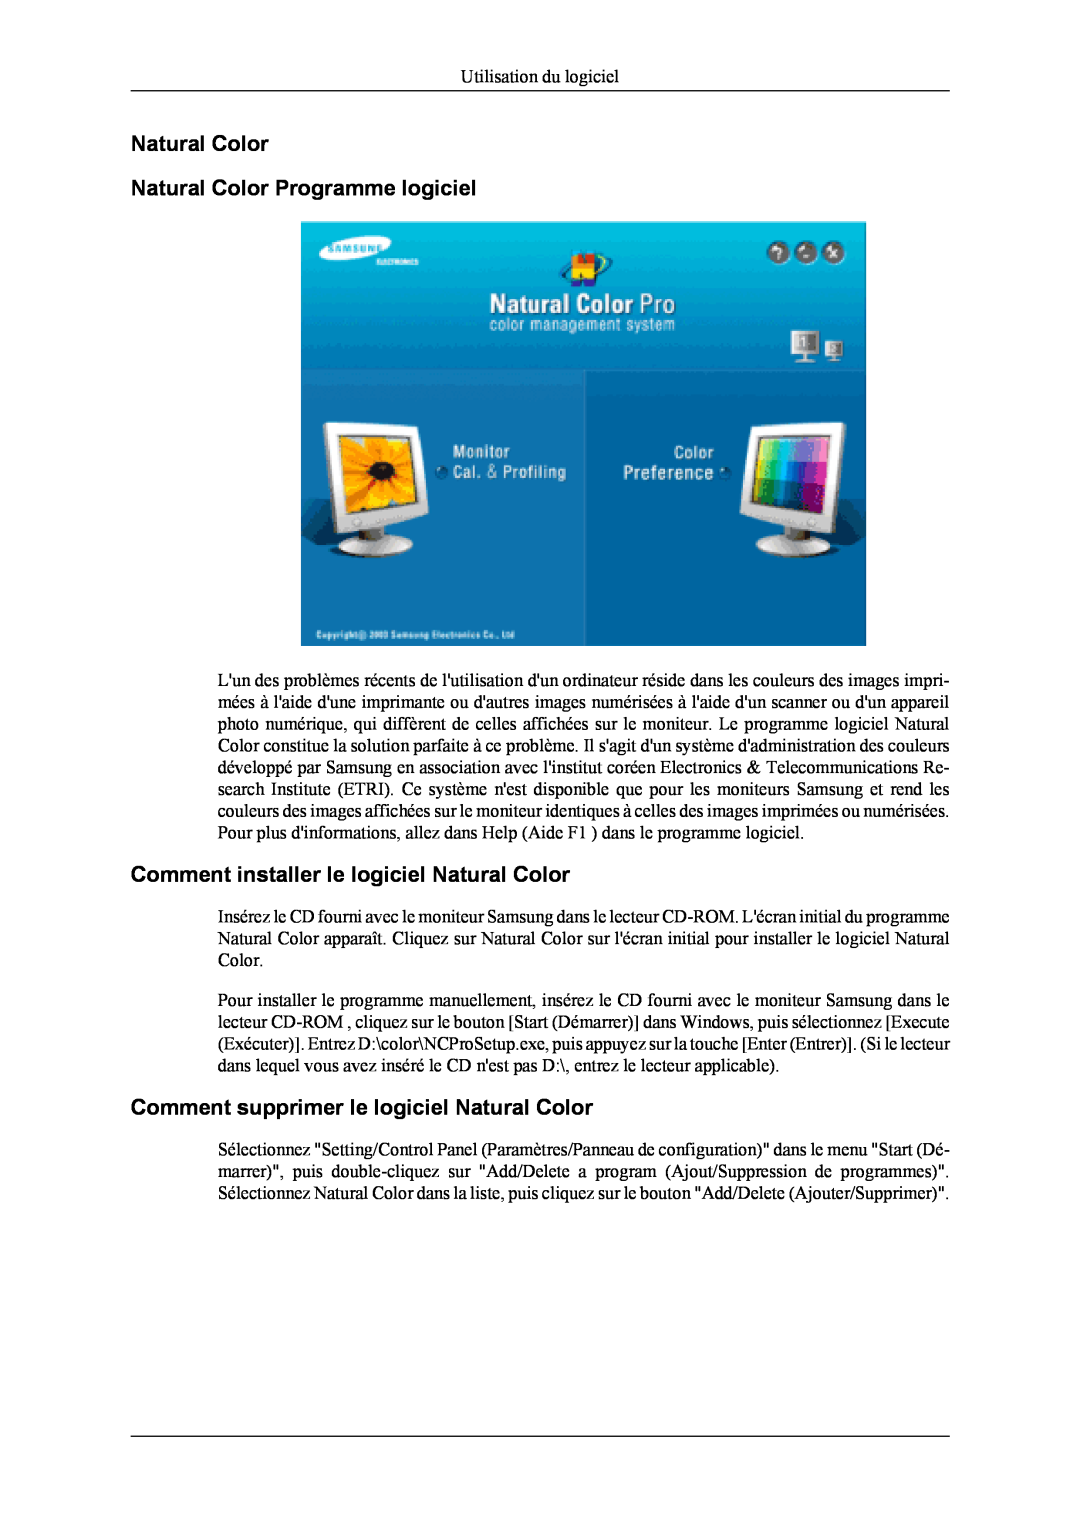 Samsung LS20TDDSUV/EN manual Natural Color Natural Color Programme logiciel, Comment installer le logiciel Natural Color 